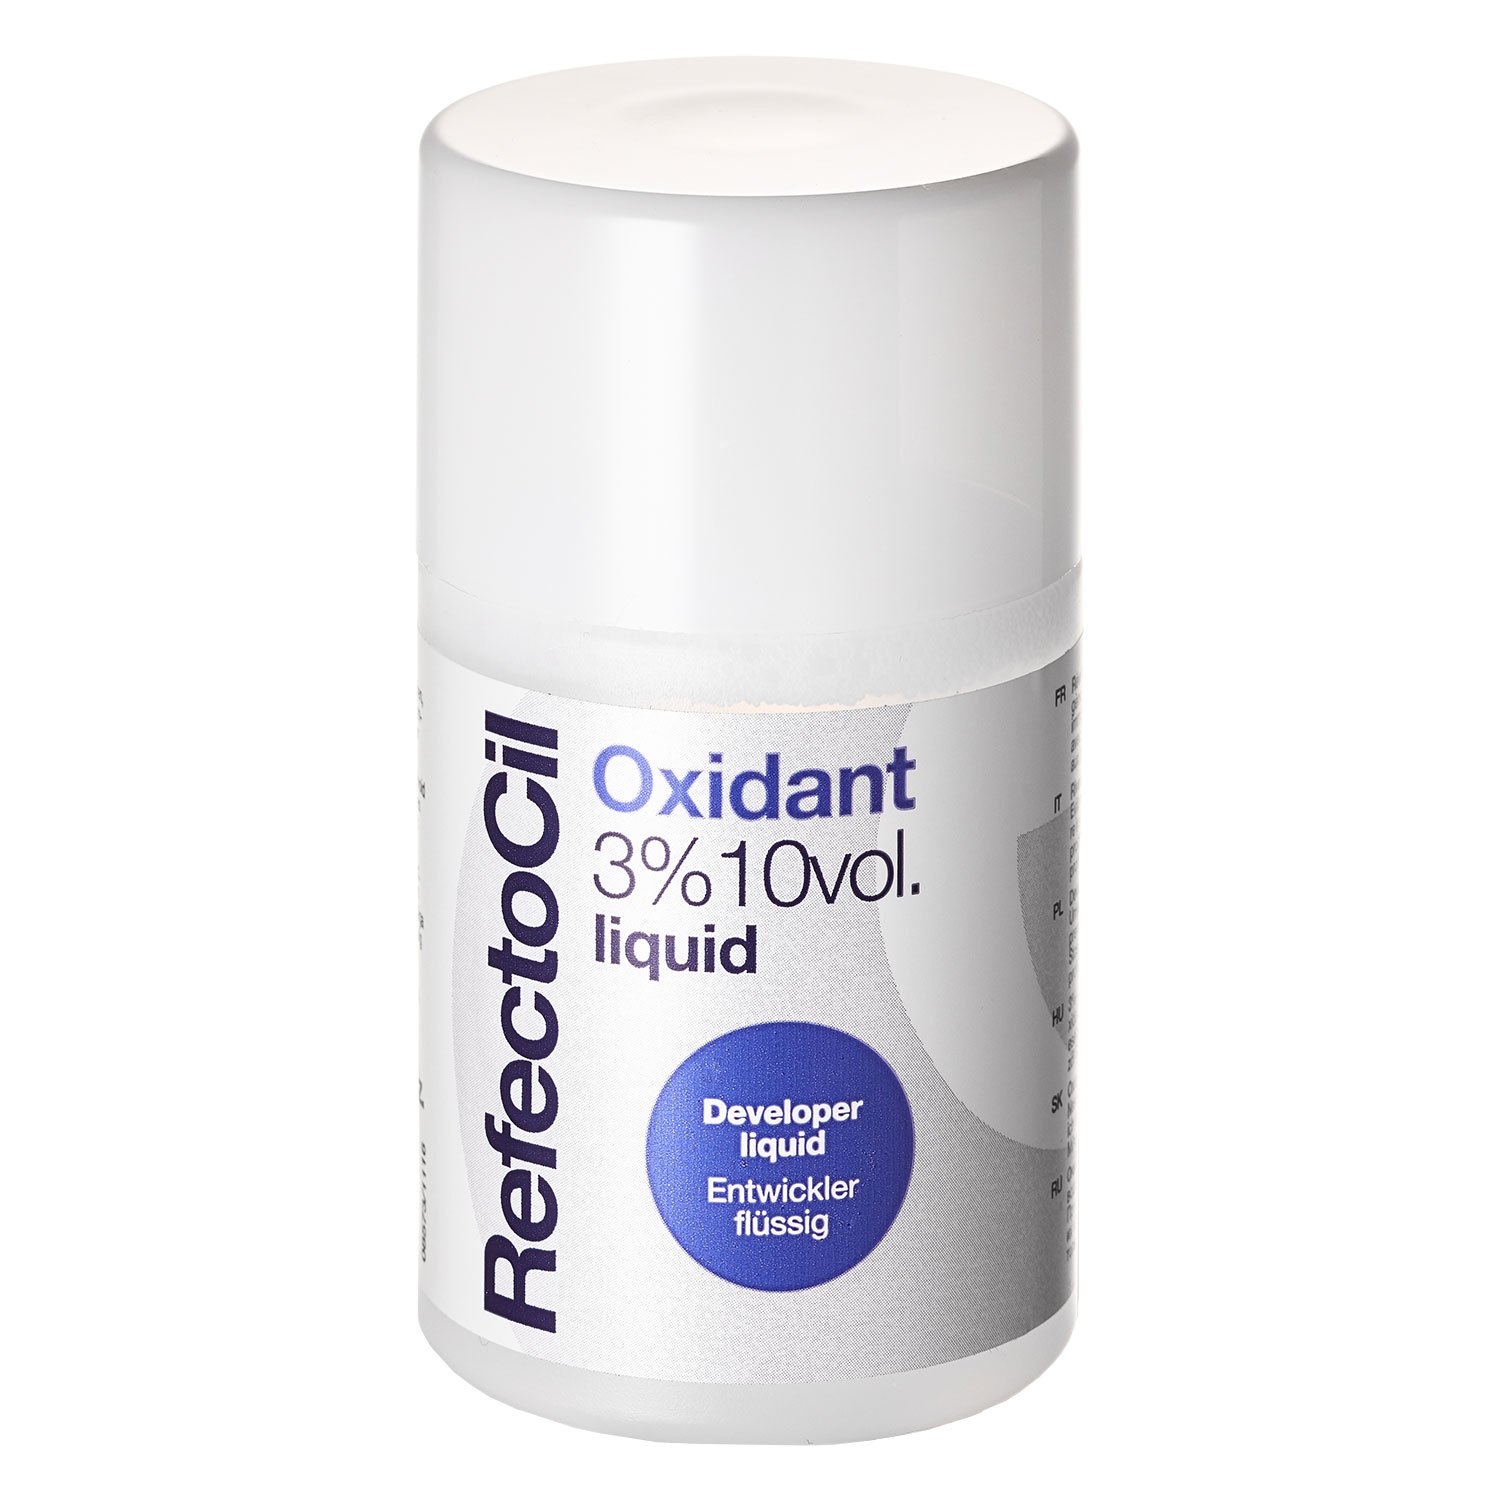 Produktbild von RefectoCil - Oxidant 3% Liquid